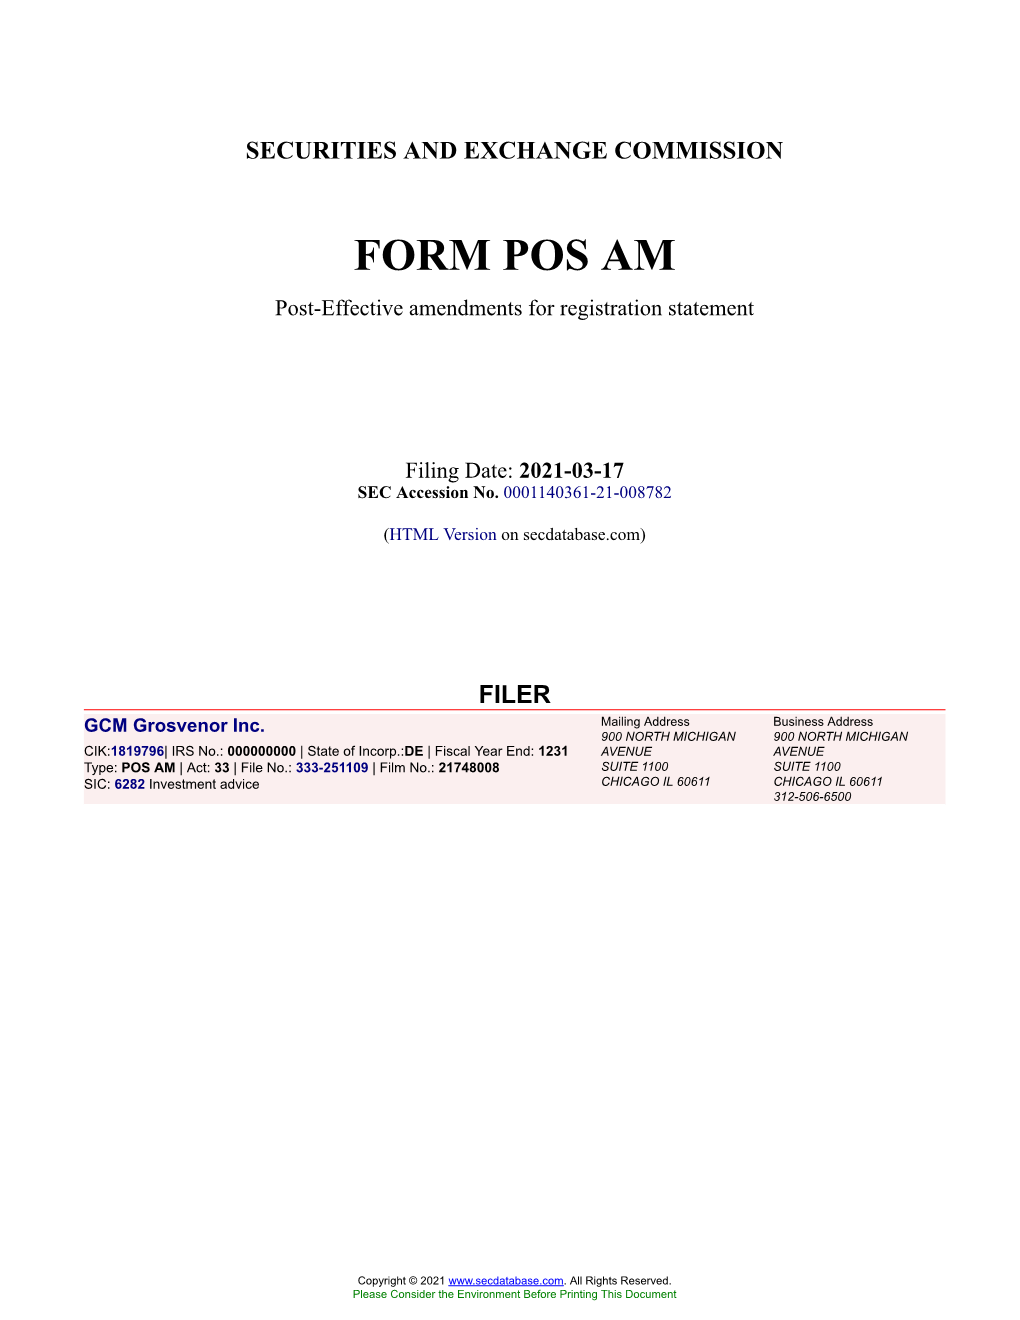 GCM Grosvenor Inc. Form POS AM Filed 2021-03-17